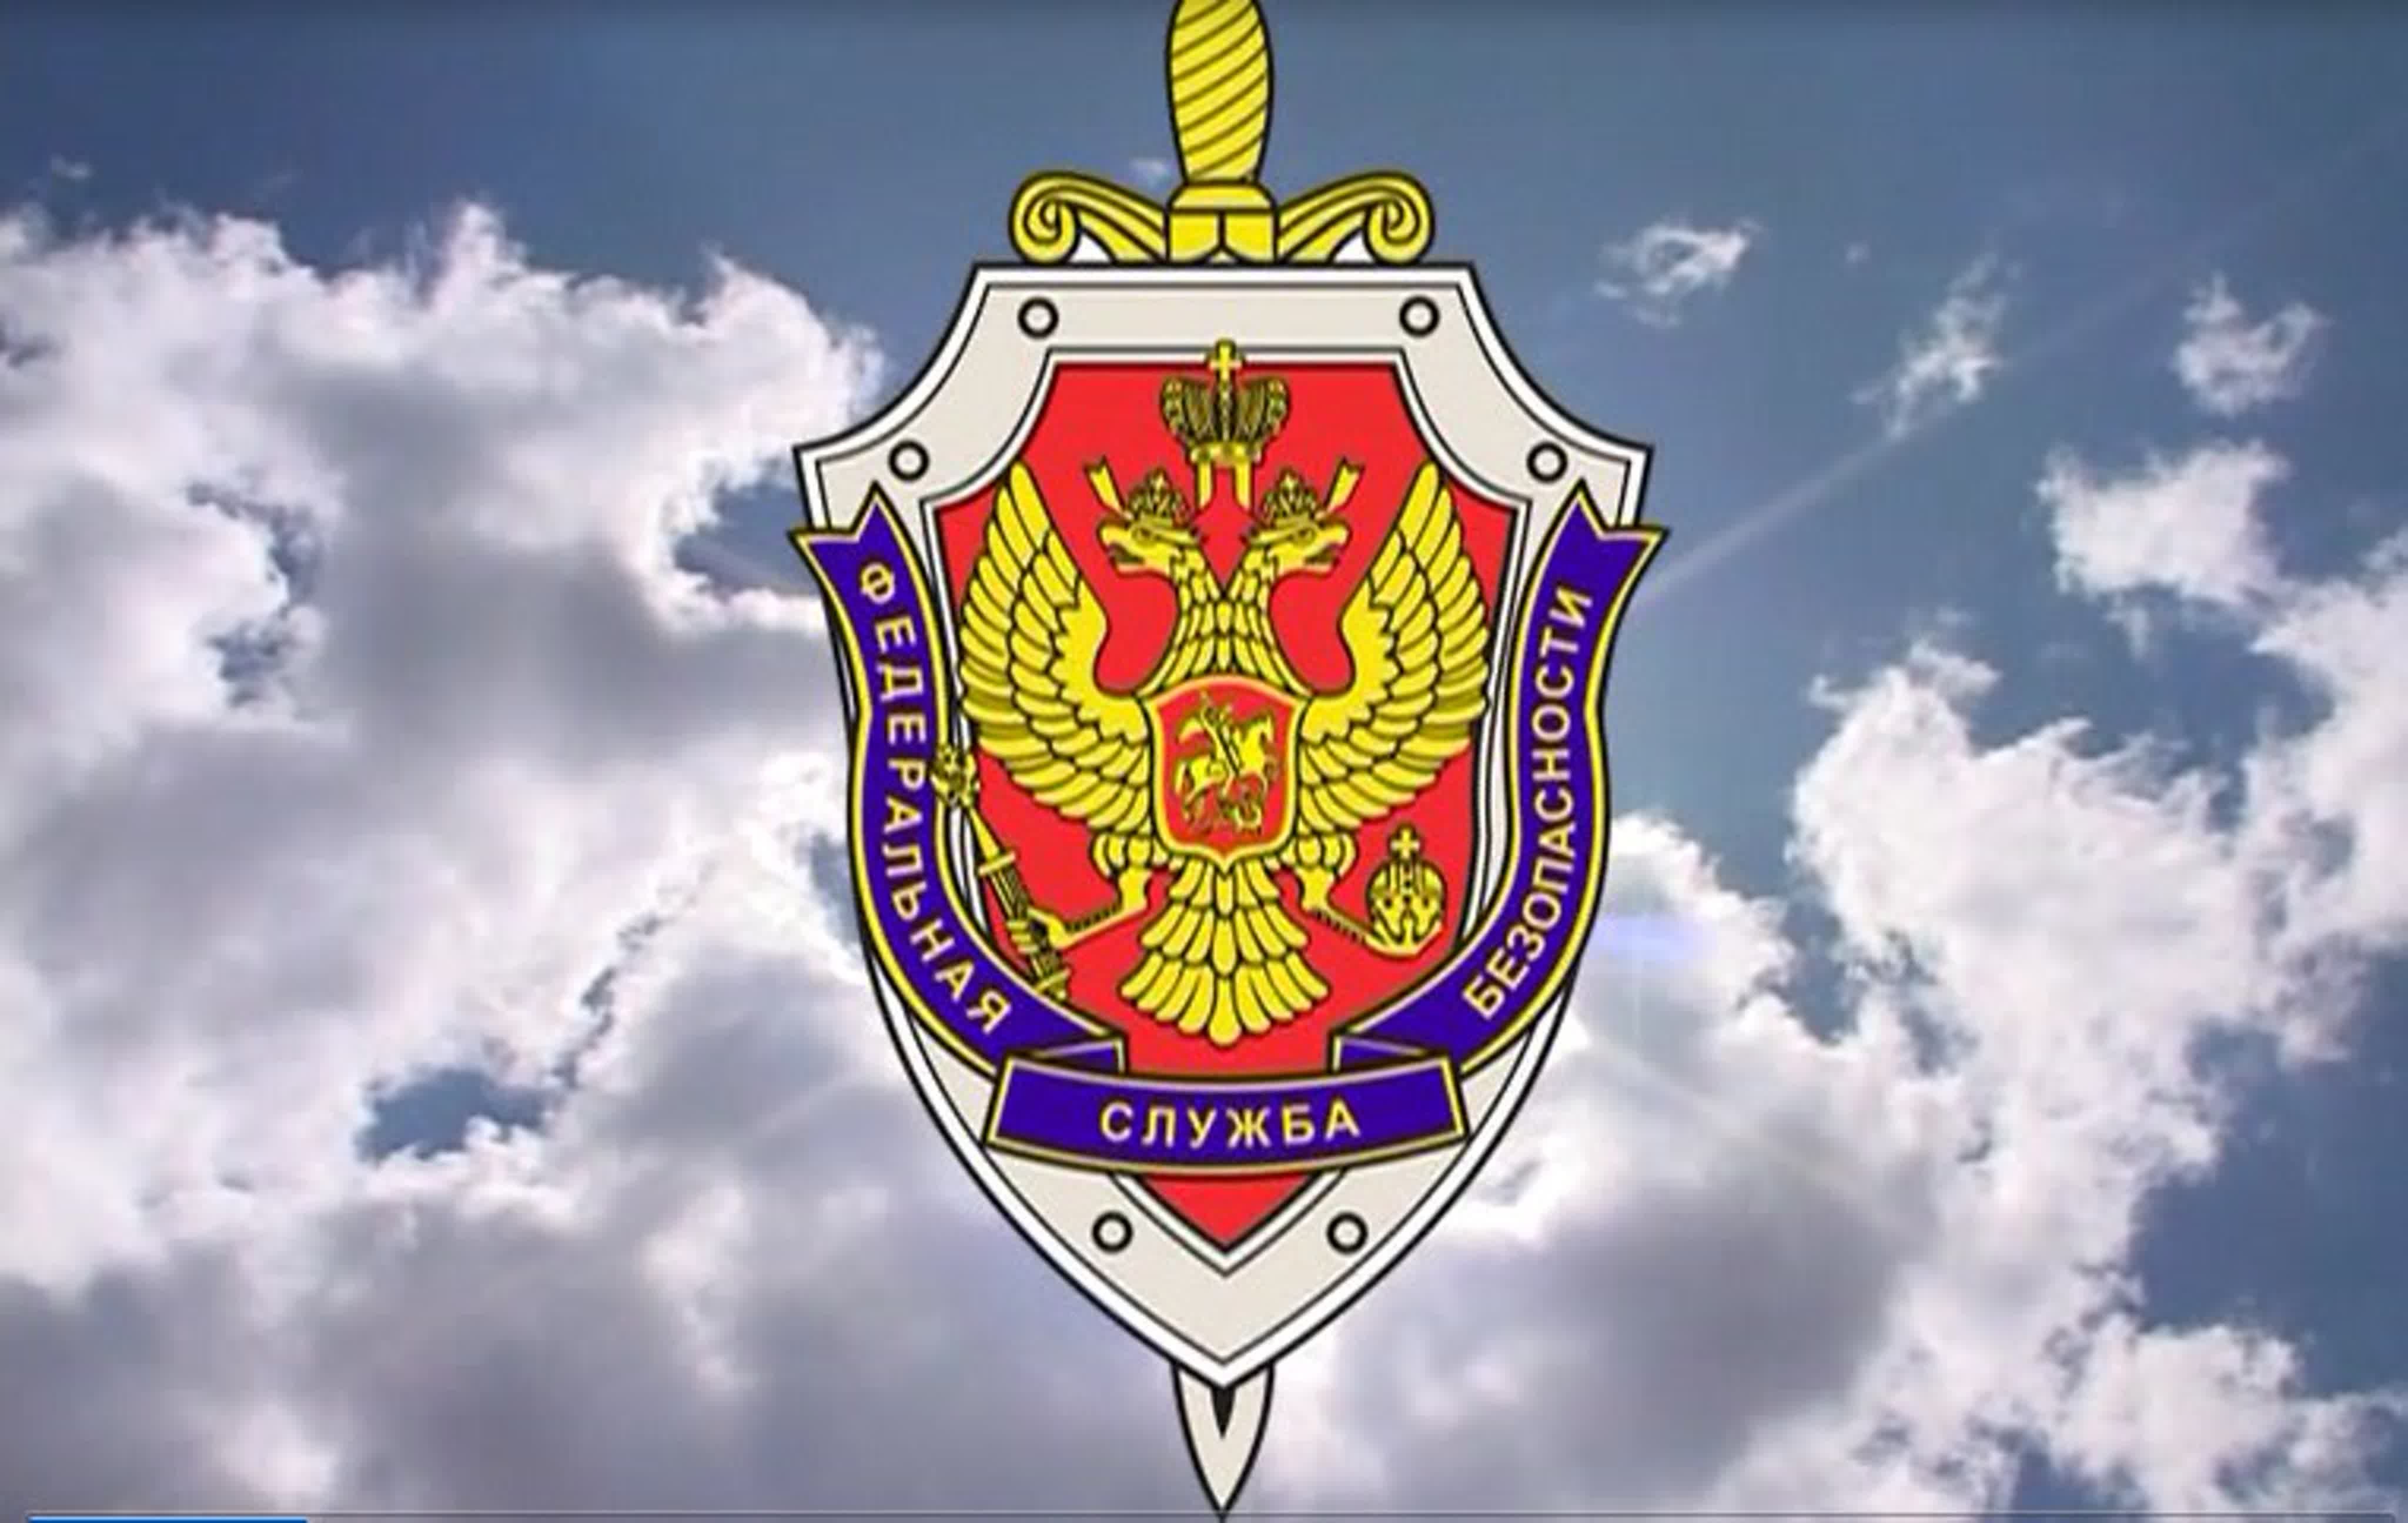 Федеральная служба безопасности и порядка. УФСБ России эмблема.